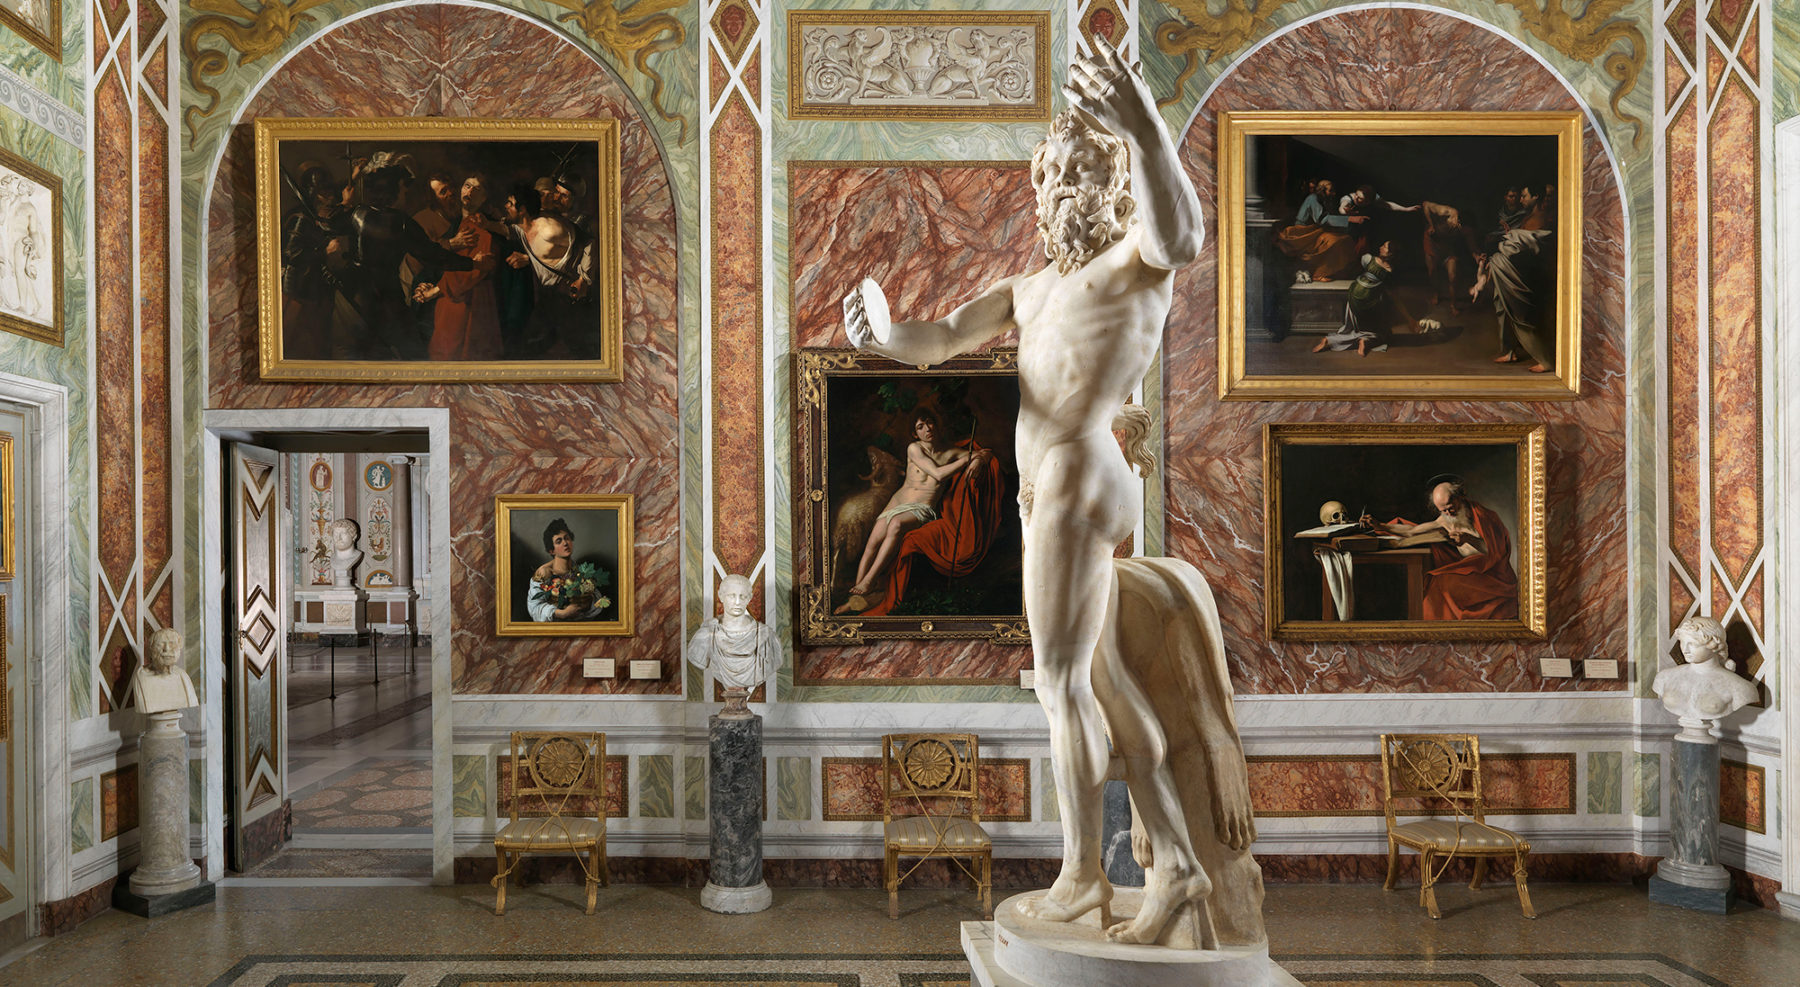 Arte in tv dal 29 giugno al 5 luglio: la Galleria Borghese, Toulouse-Lautrec, i Musei Vaticani 3D 